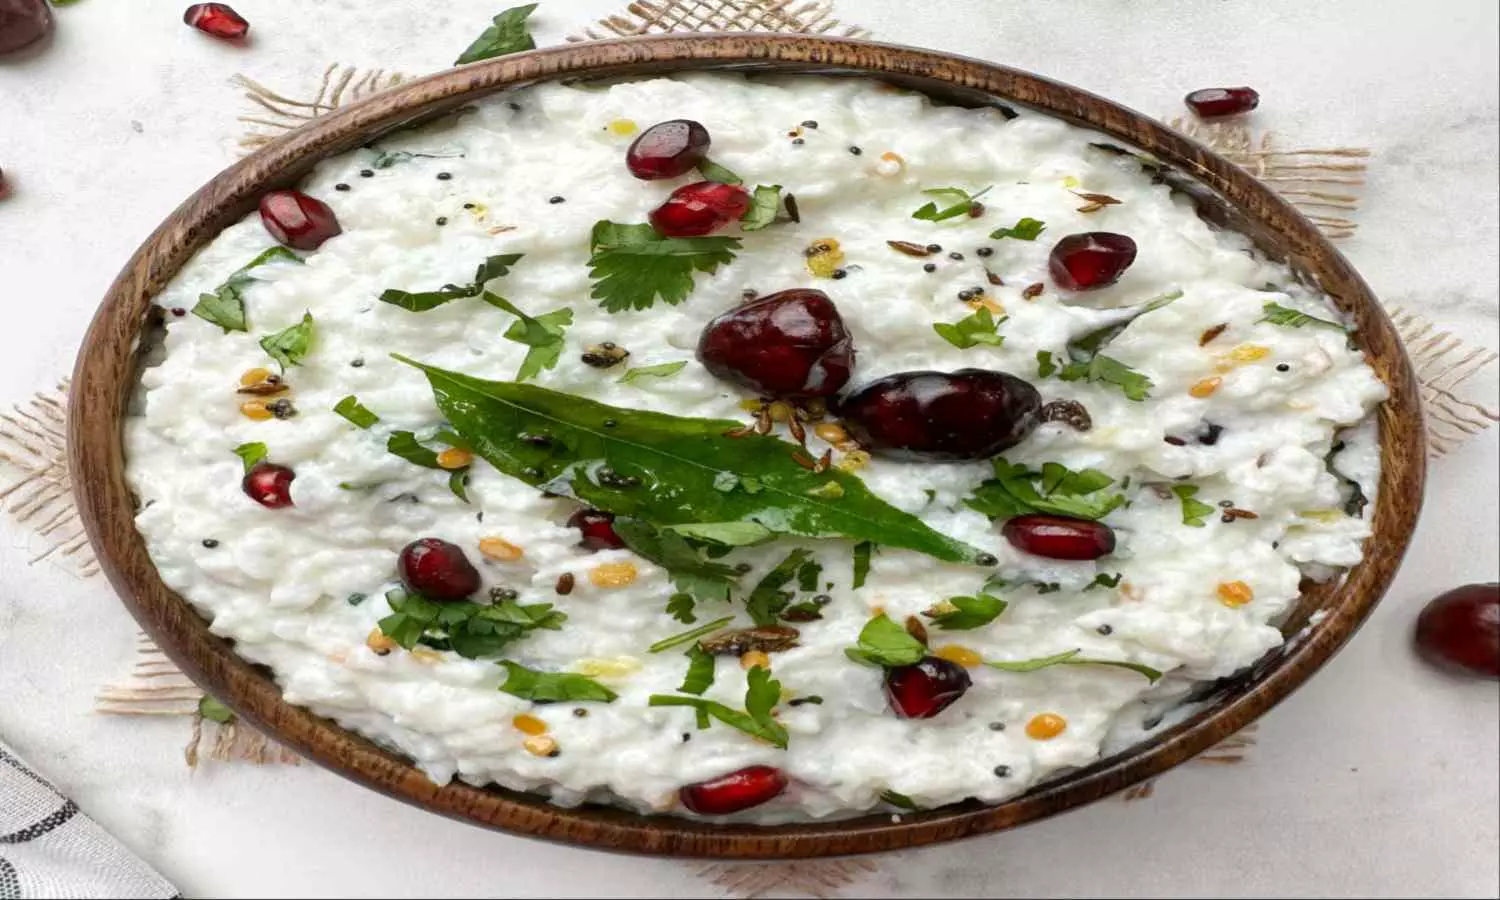 Curd Rice: भारत की पॉपुलर डिश में से एक है कर्ड राइस, जानें इसे बनाने का तरीका